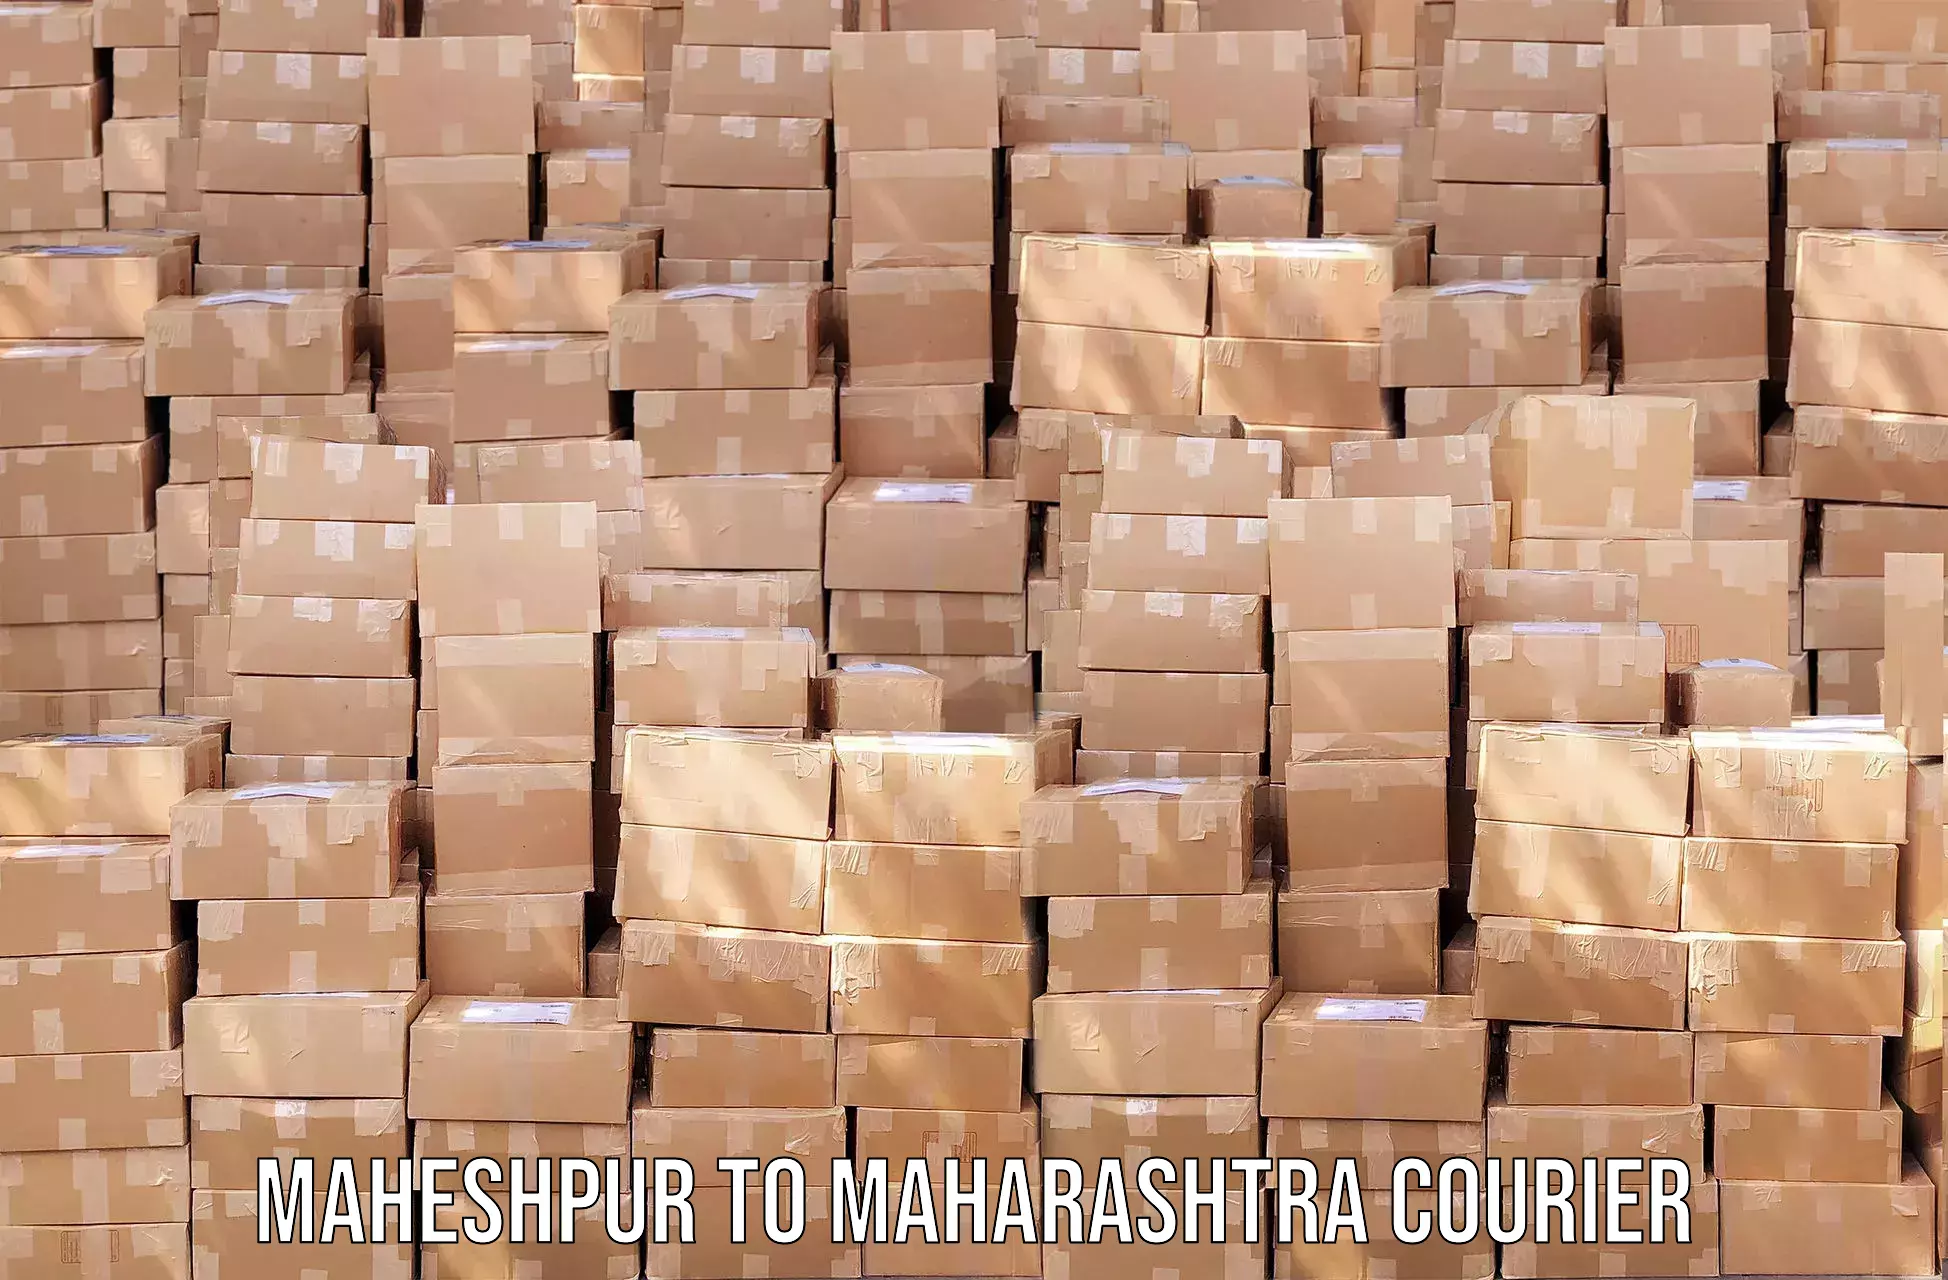 Nationwide shipping coverage Maheshpur to Nashik